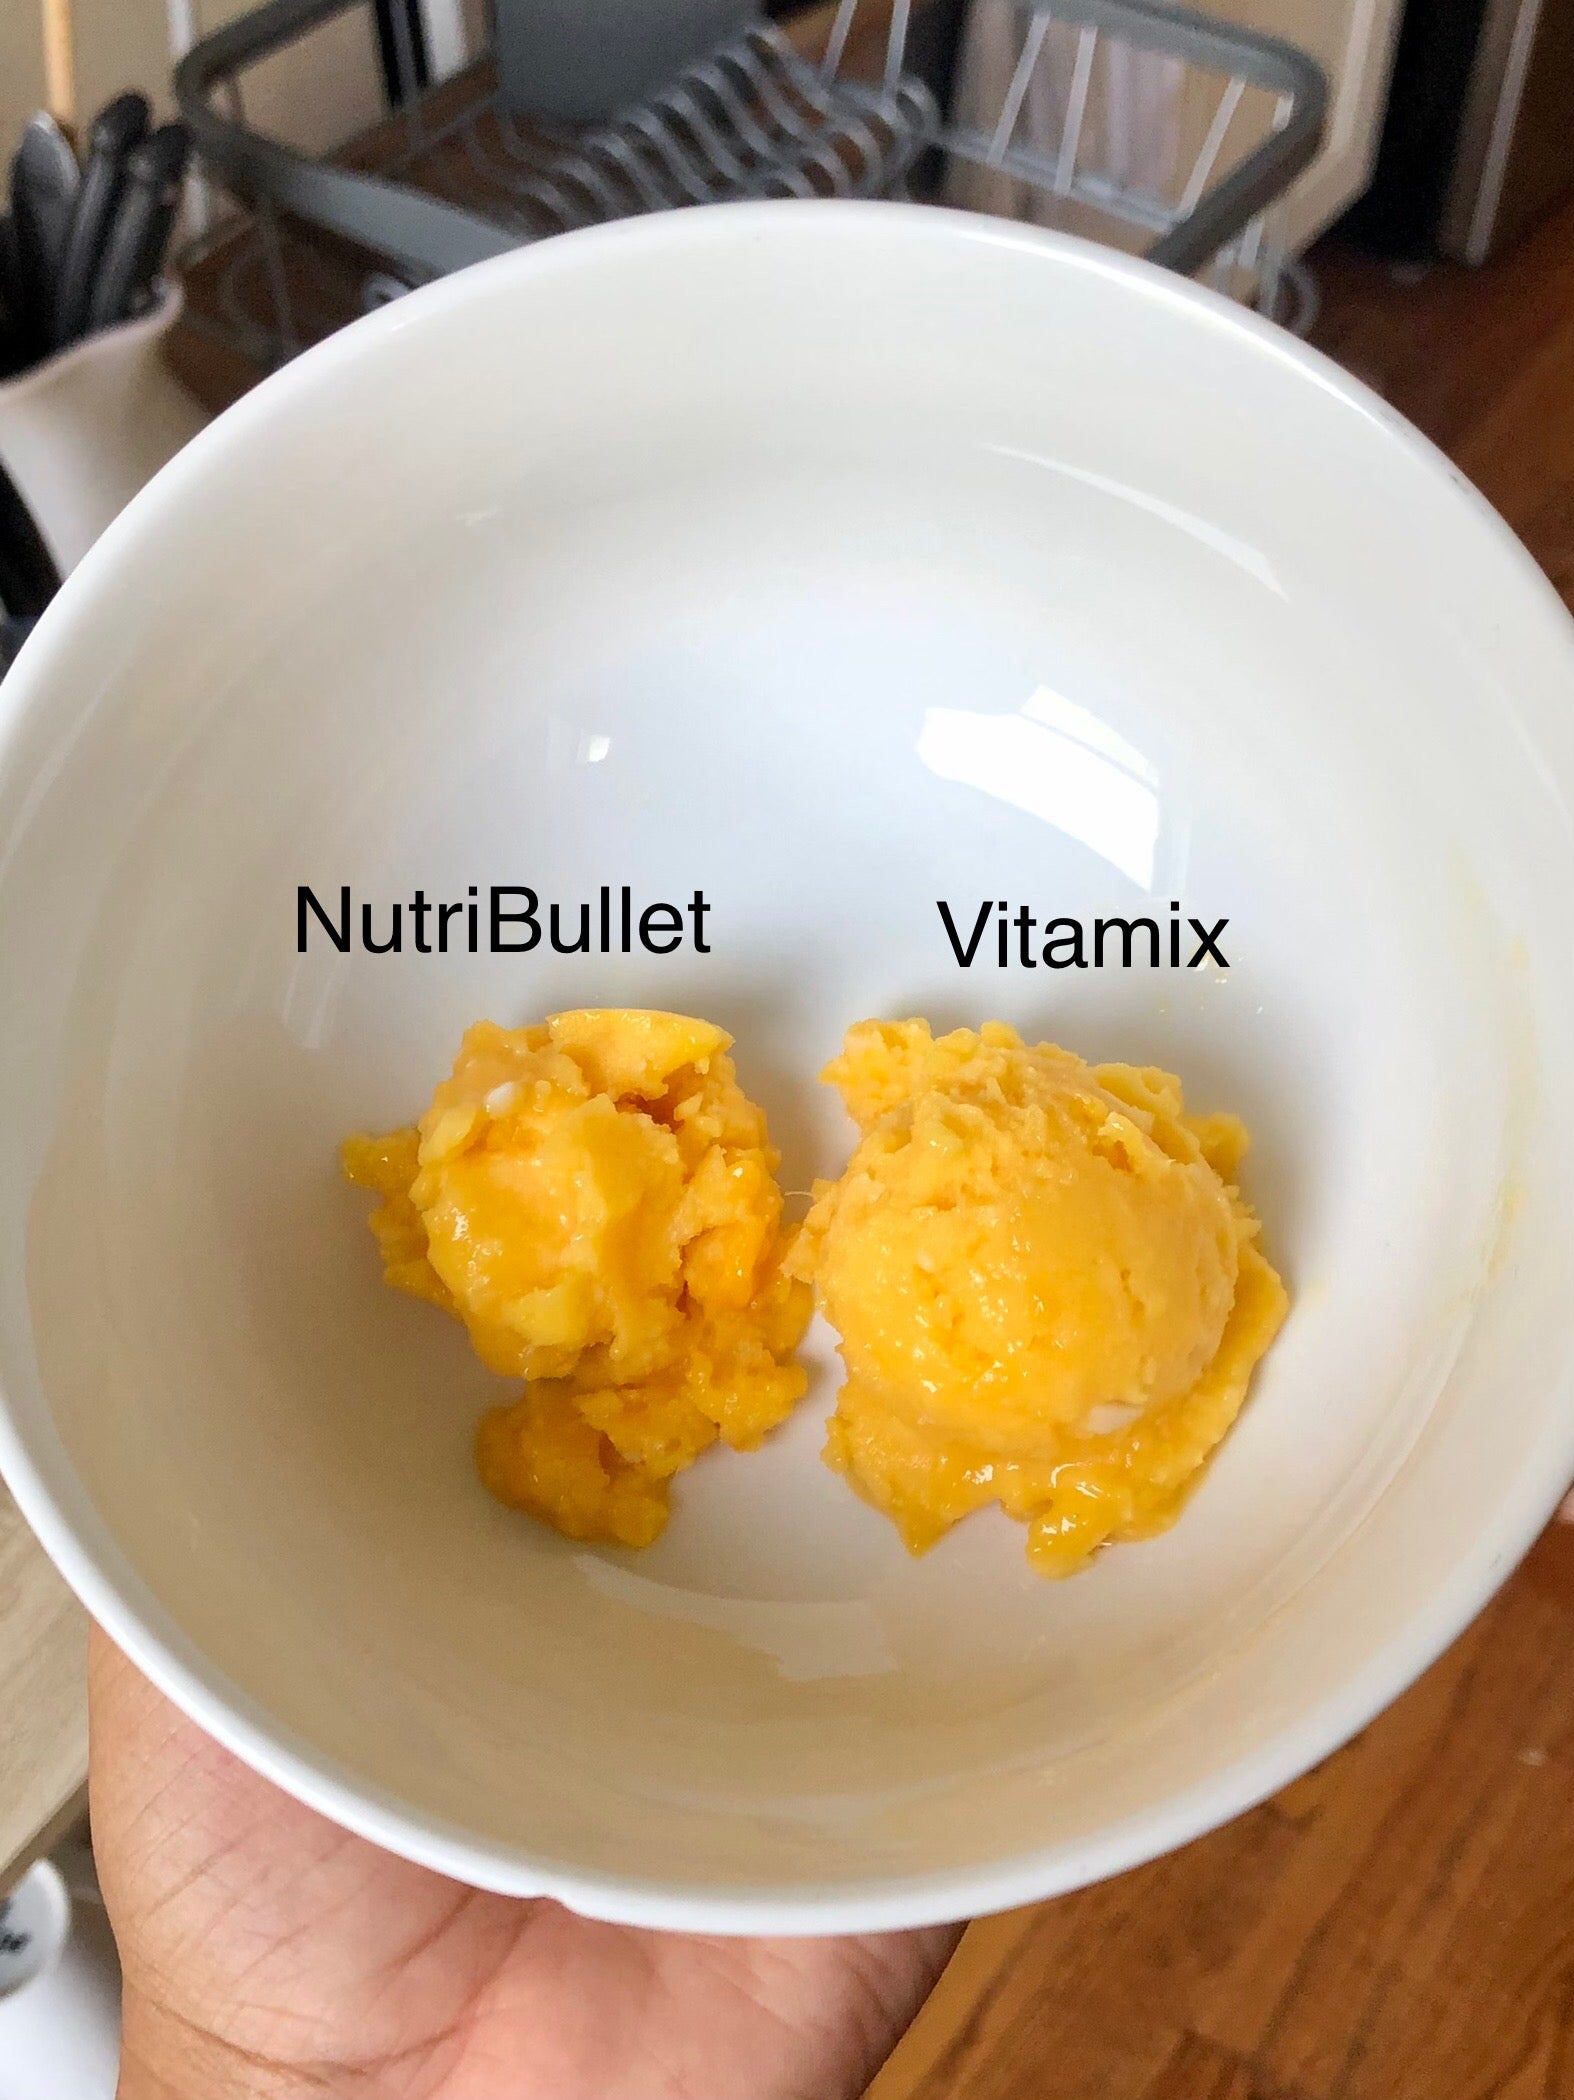 $250 Vitamix ONE versus $100 NutriBullet Pro Review